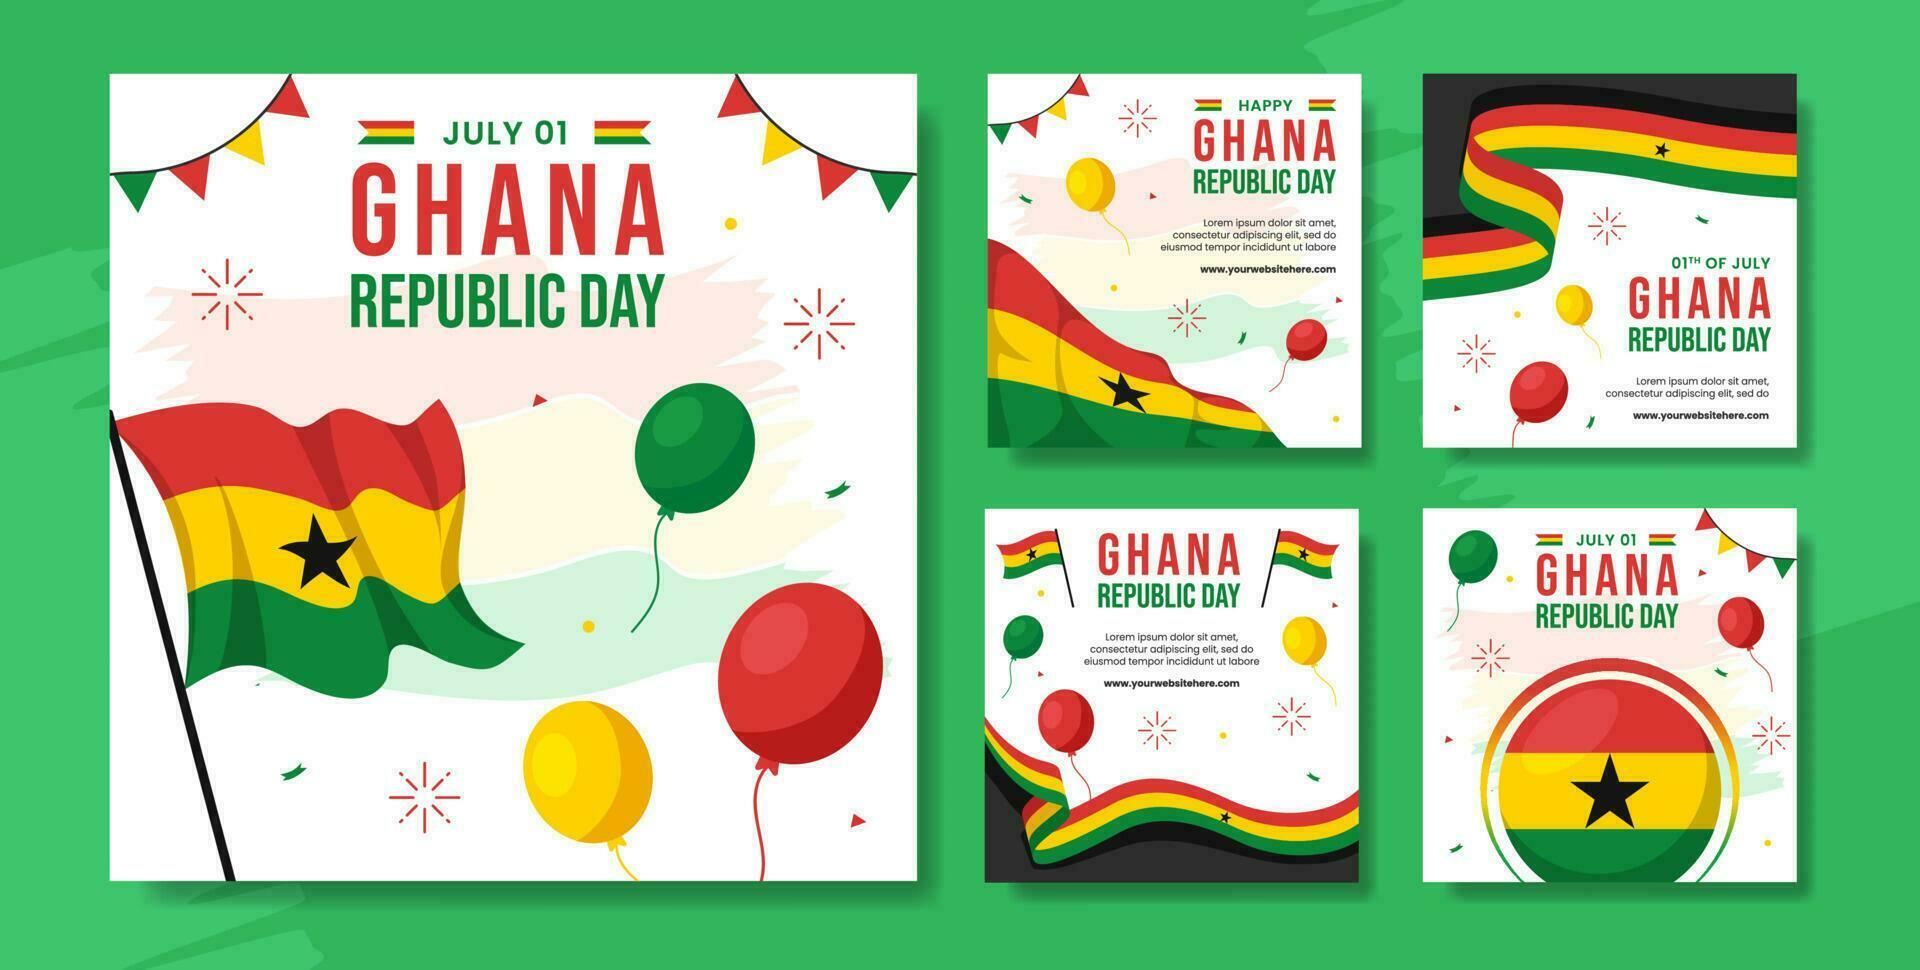 Ghana república día social medios de comunicación enviar plano dibujos animados mano dibujado plantillas antecedentes ilustración vector